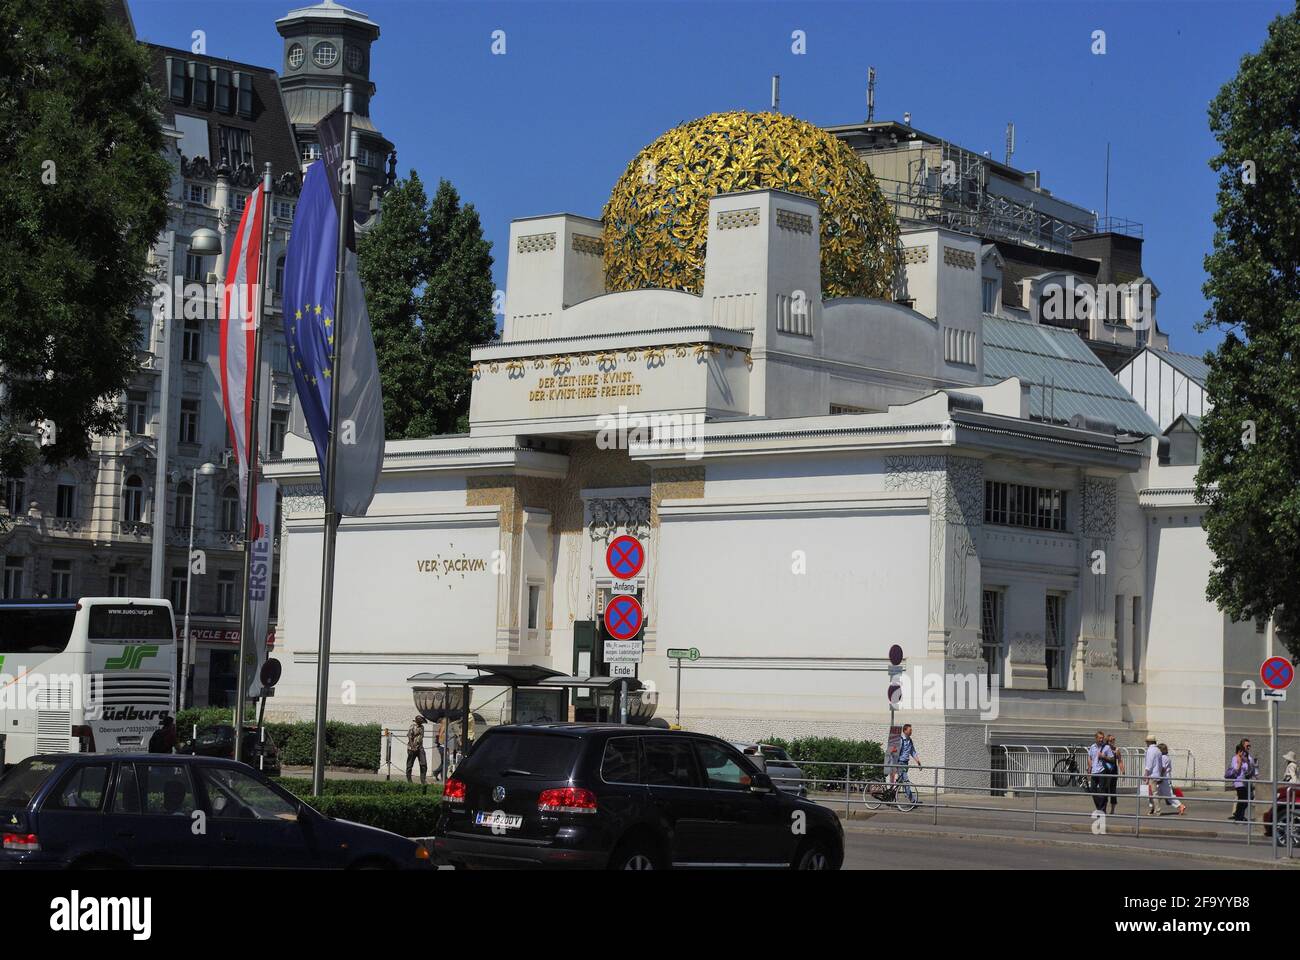 Escena callejera con el clásico edificio de secesión art nouveau, Viena, Austria Foto de stock